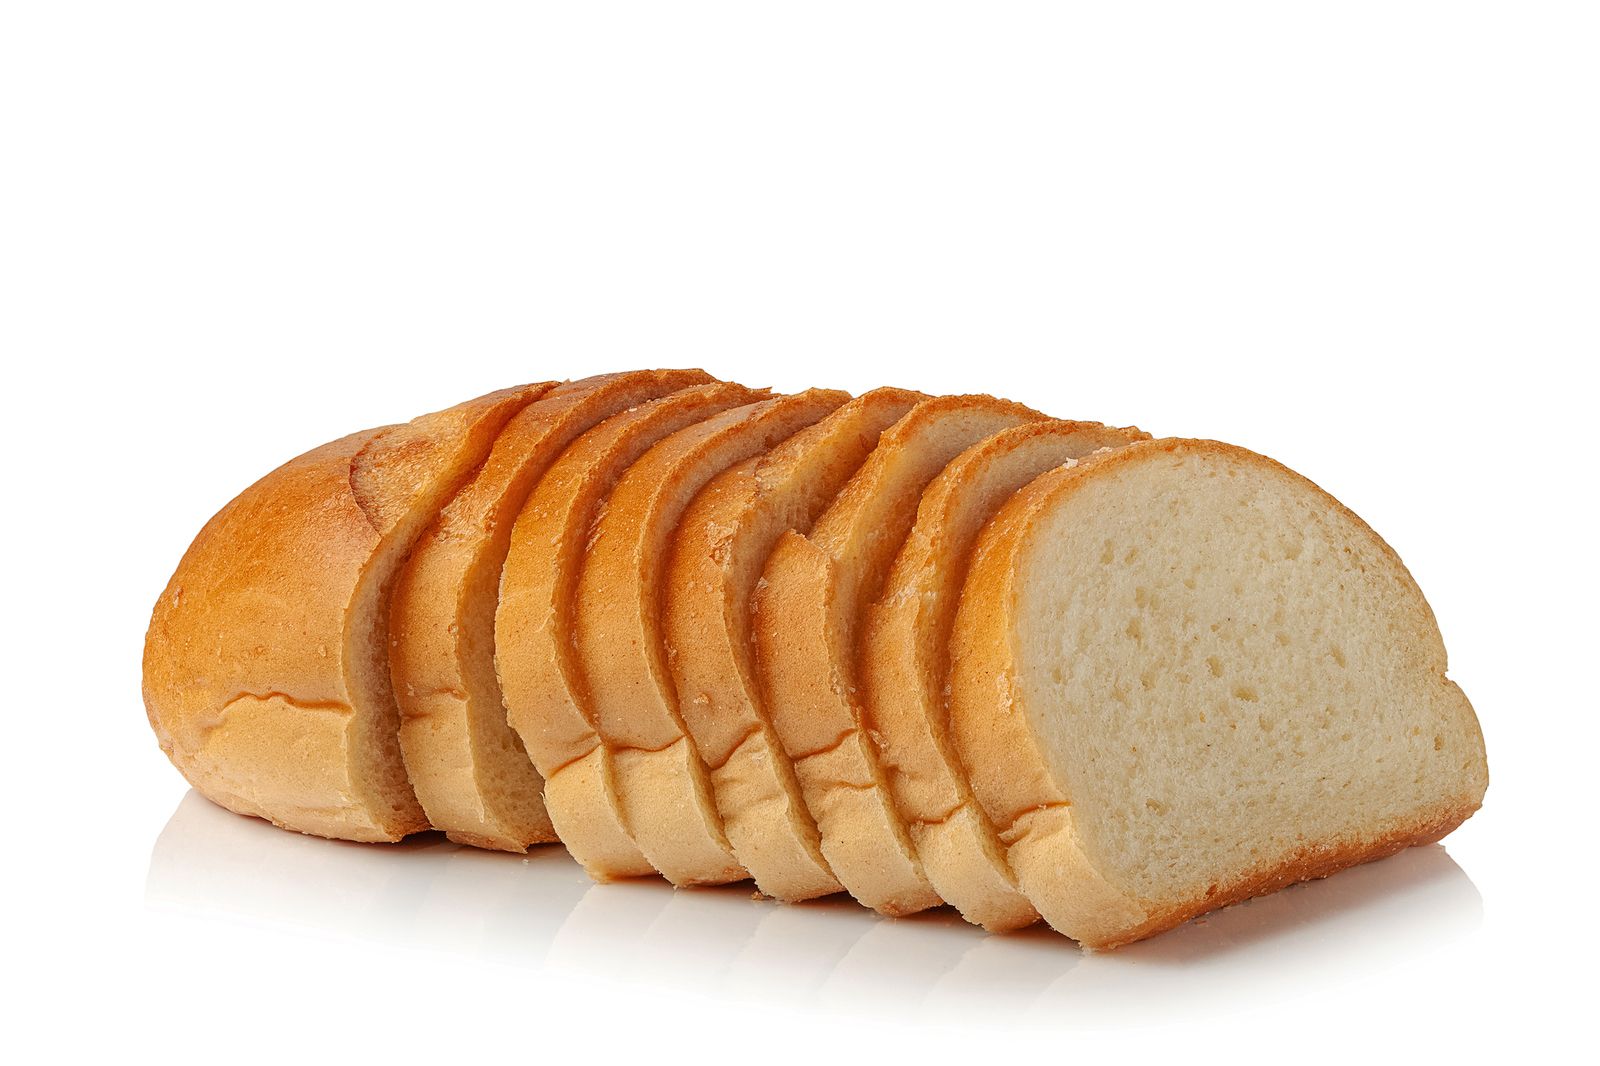 El único pan de molde saludable que puedes encontrar en el supermercado